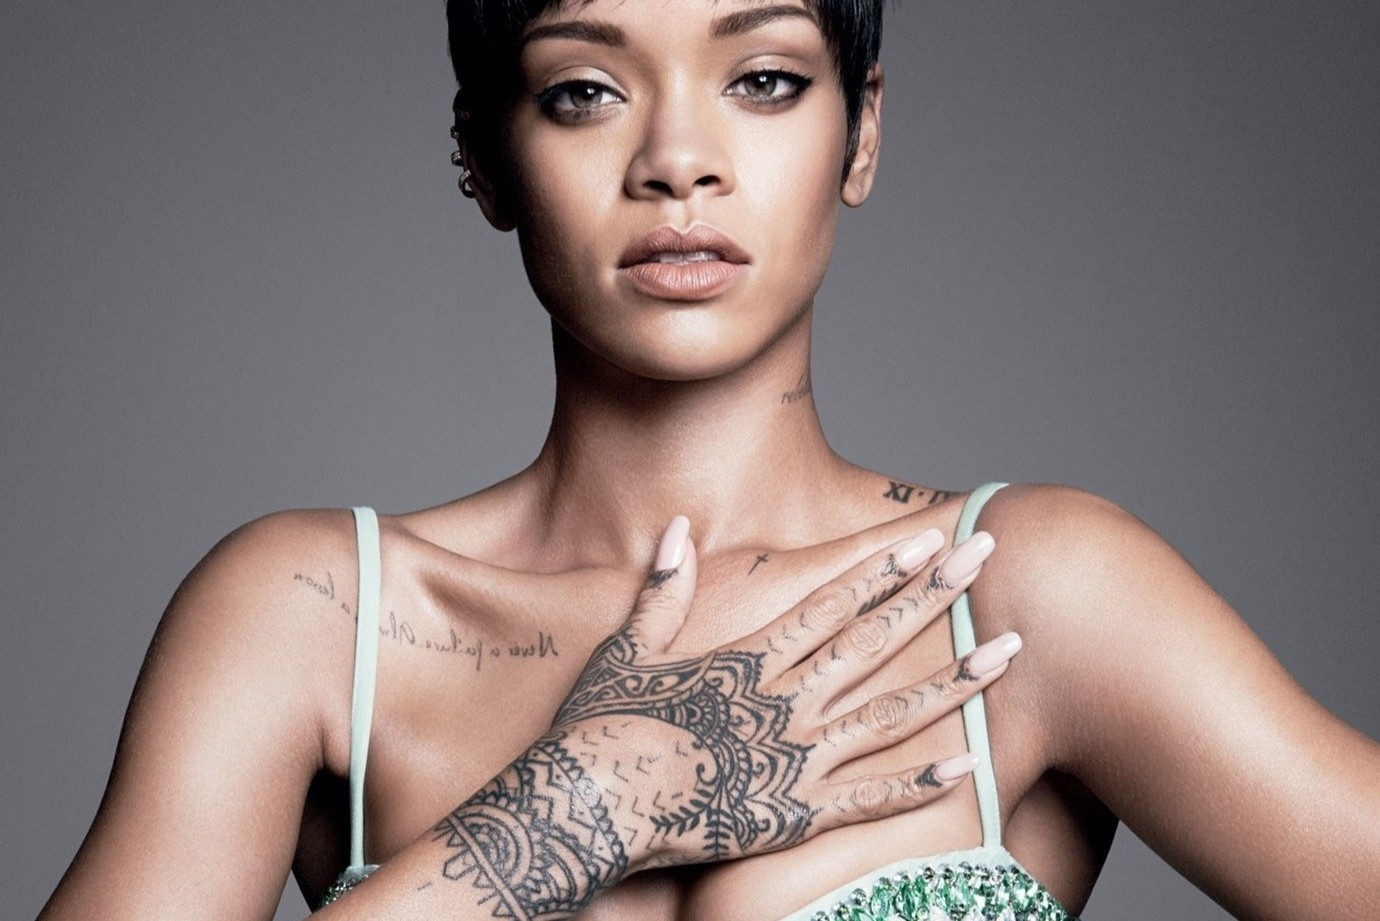 Vi sao Rihanna xam hinh sung, nu phàn nàn Ai Cap tren teo the? hinh anh